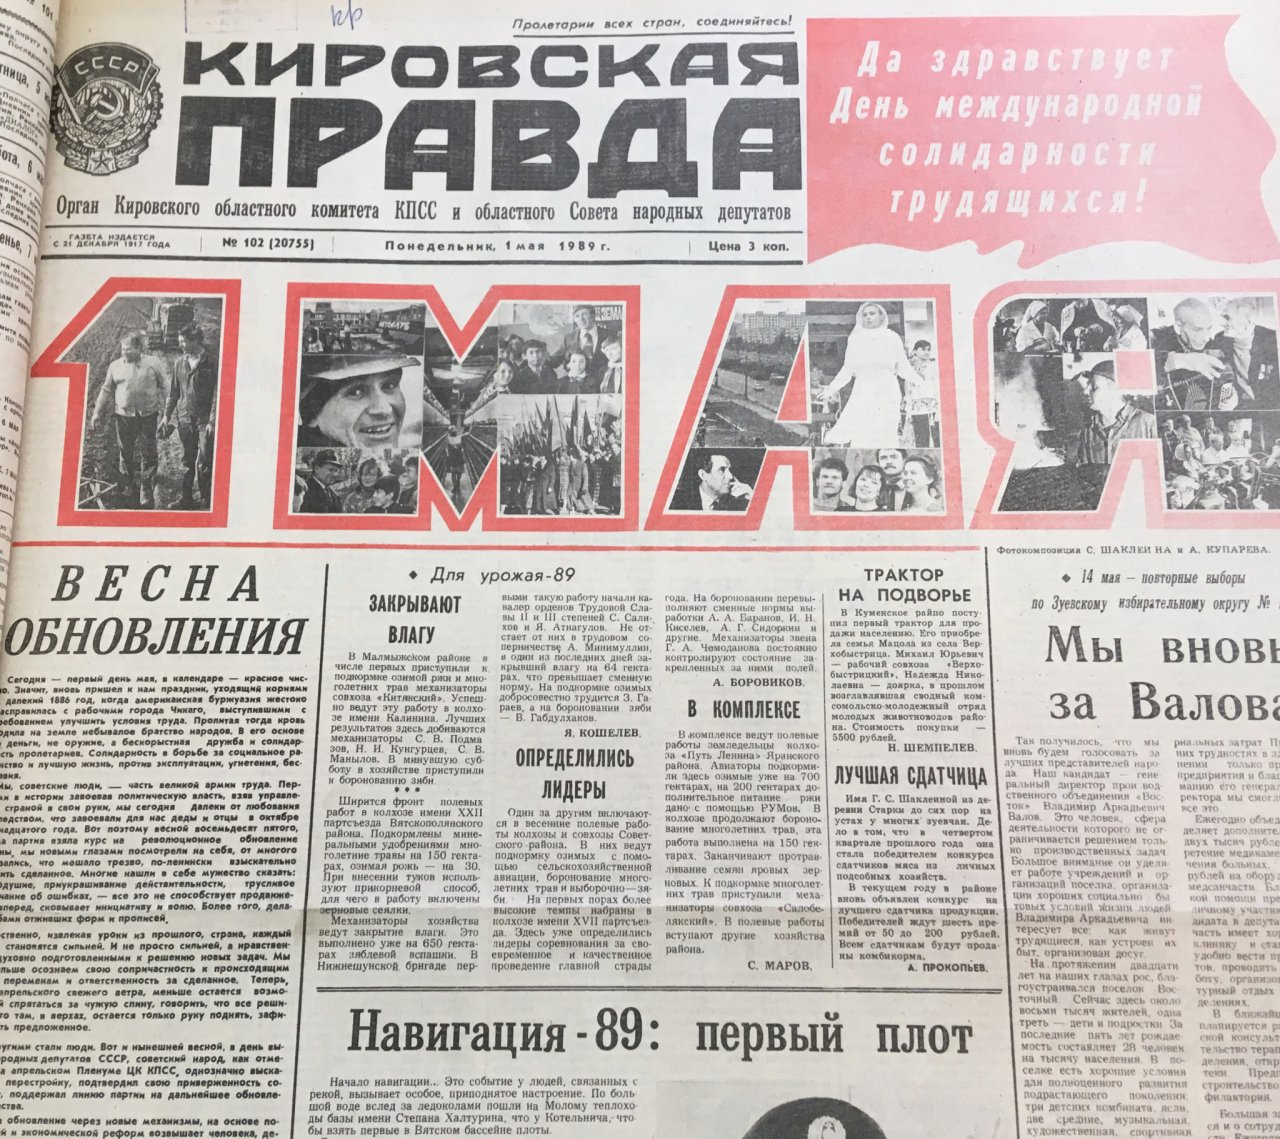 Первомай в Кирове: о чем писали газеты 30, 20 и 10 лет назад